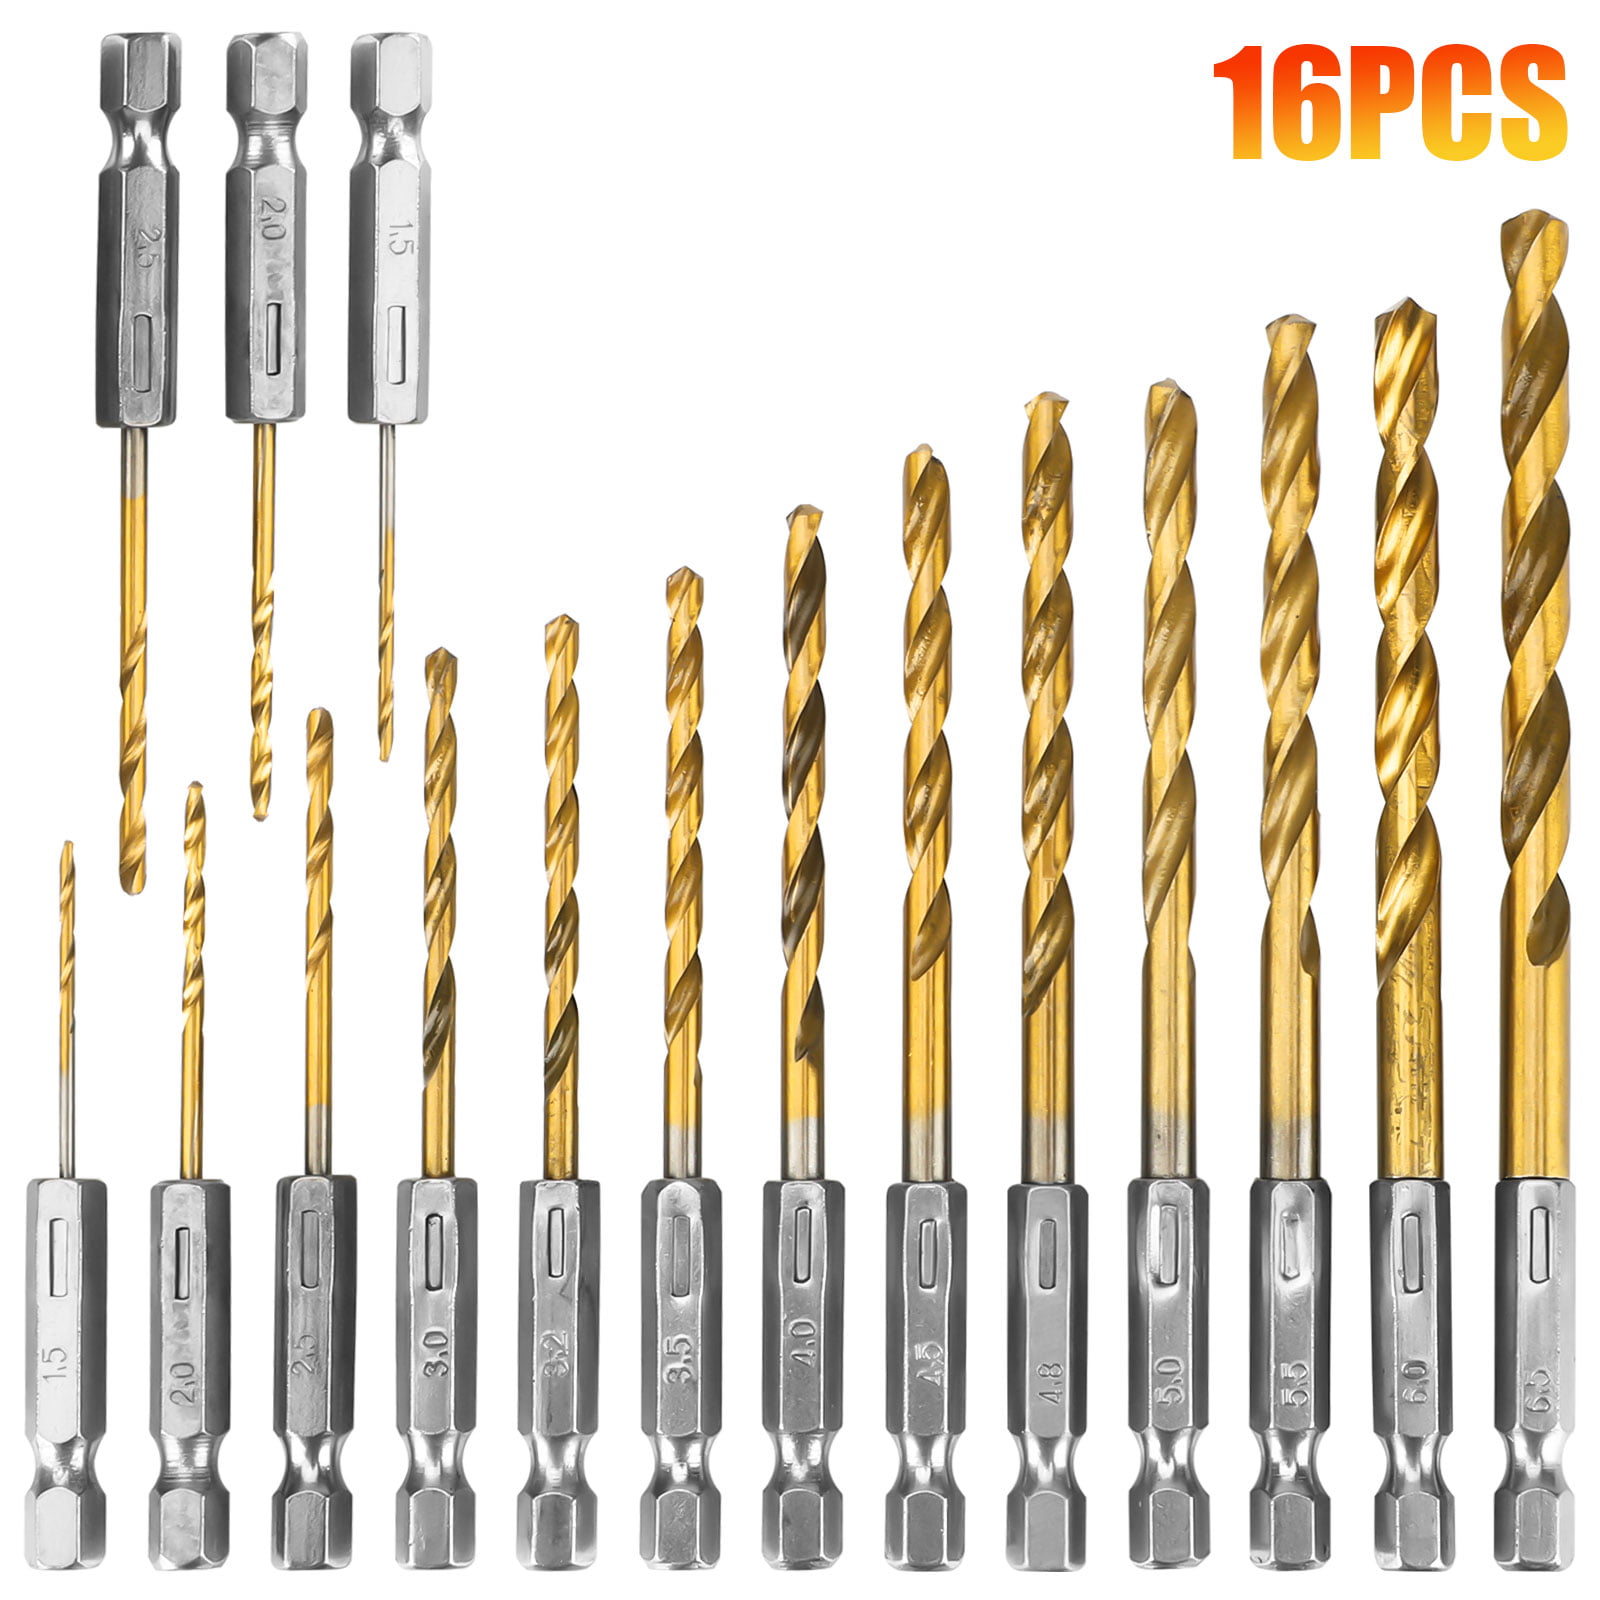 13pcs HSS High Speed Steel Drill Bit Set Hex Shank Bits Titanium Coated Tools. 